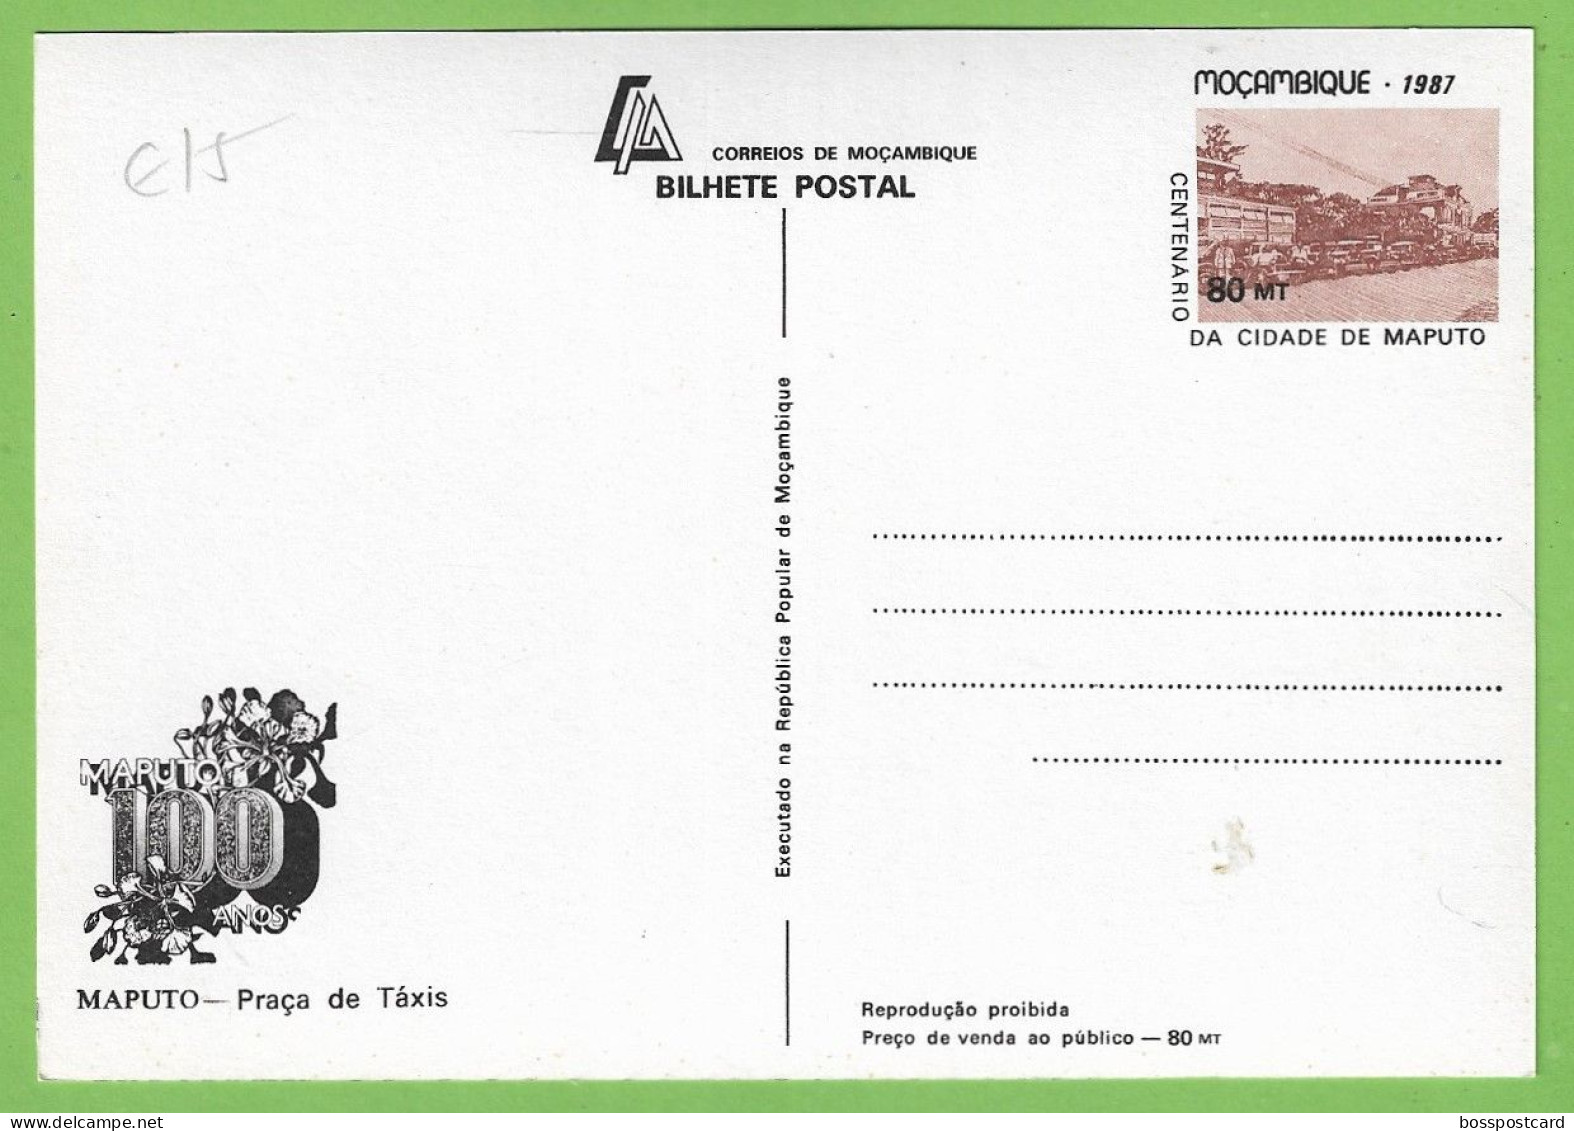 História Postal - Filatelia - Stationery - Stamps - Timbres - Ilustrador - Ilustração - Portugal - Moçambique - Mozambique